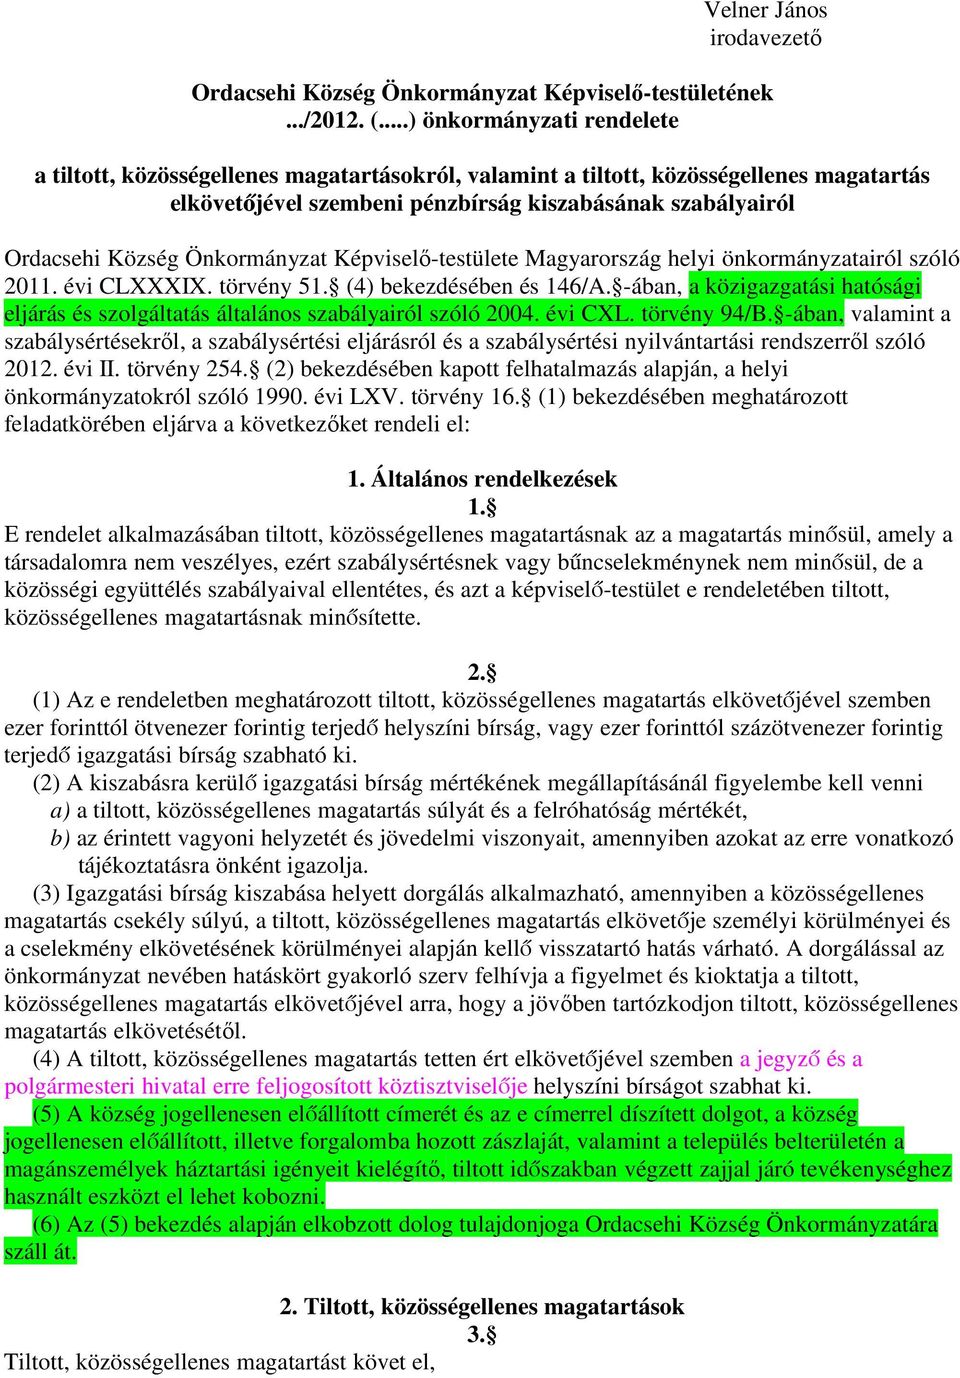 Önkormányzat Képviselő-testülete Magyarország helyi önkormányzatairól szóló 2011. évi CLXXXIX. törvény 51. (4) bekezdésében és 146/A.